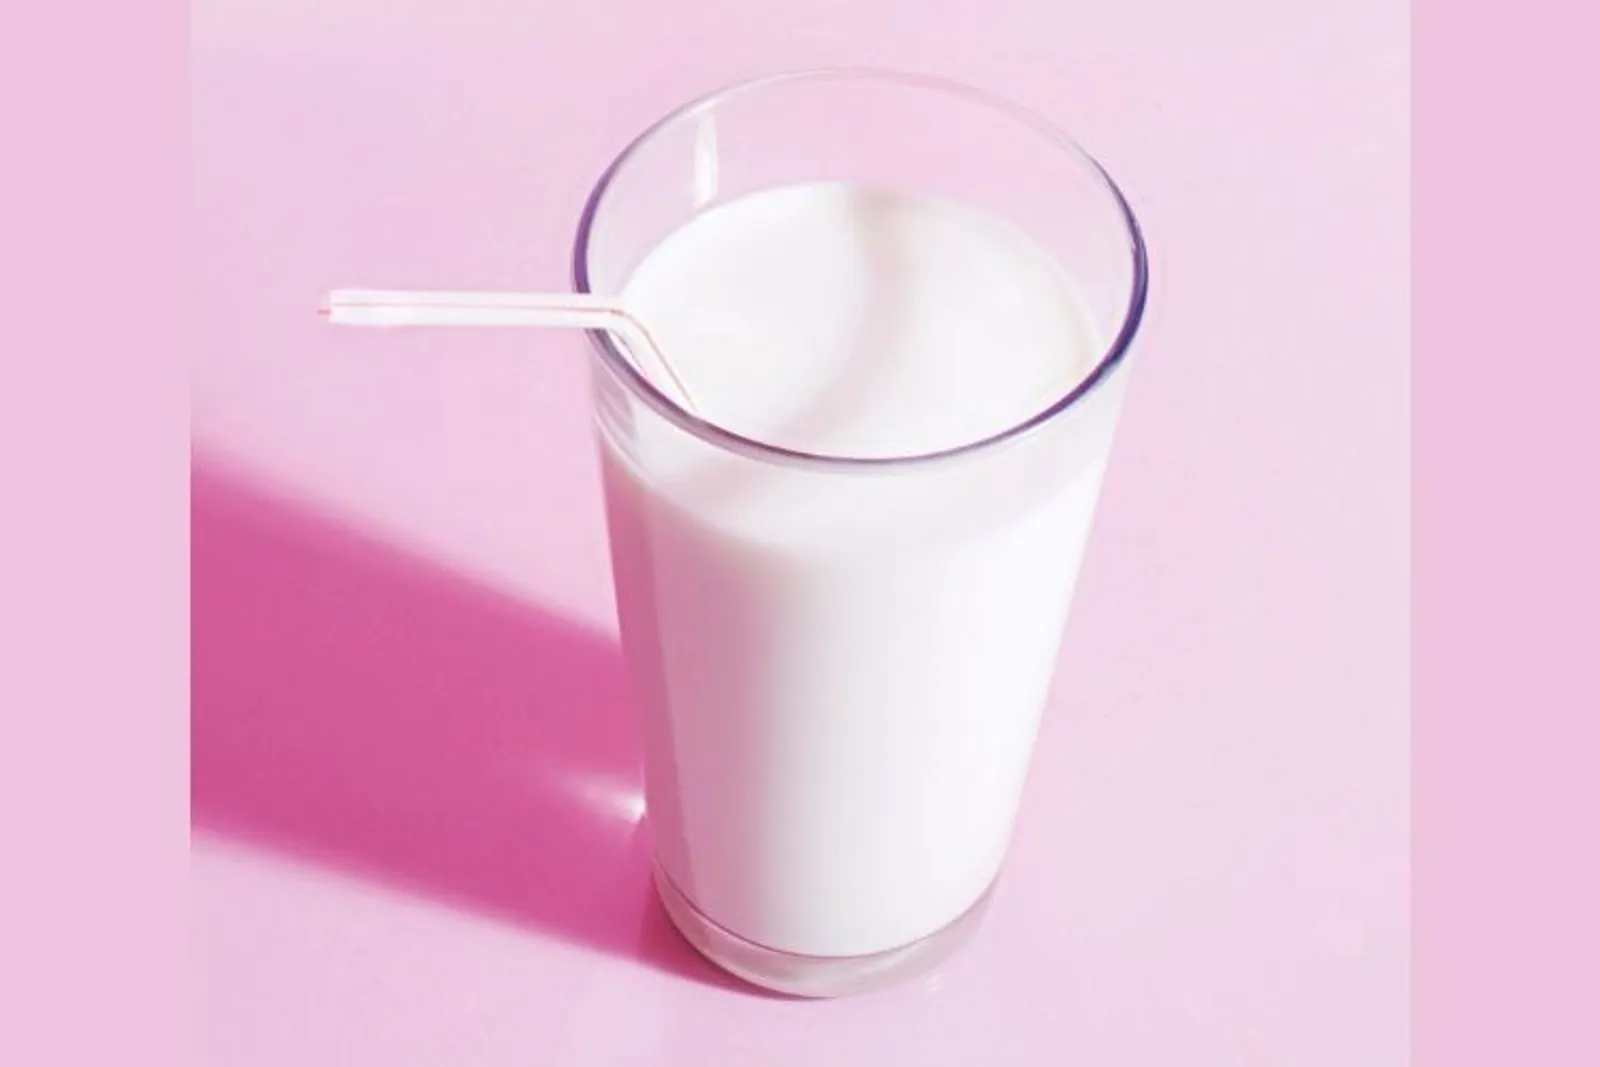 Bukan Cuma Buat Tulang, Inilah Manfaat Minum Susu yang Wajib Diketahui